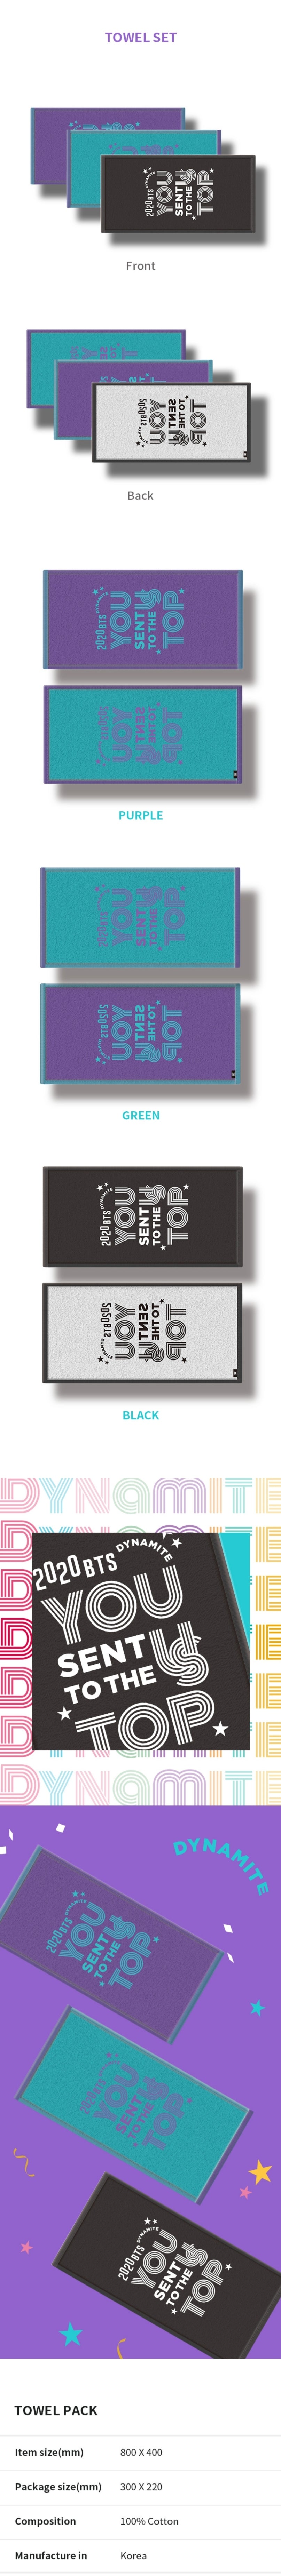 BTS Dynamite Celebration Oficial Merchandise - Towel Pack 01